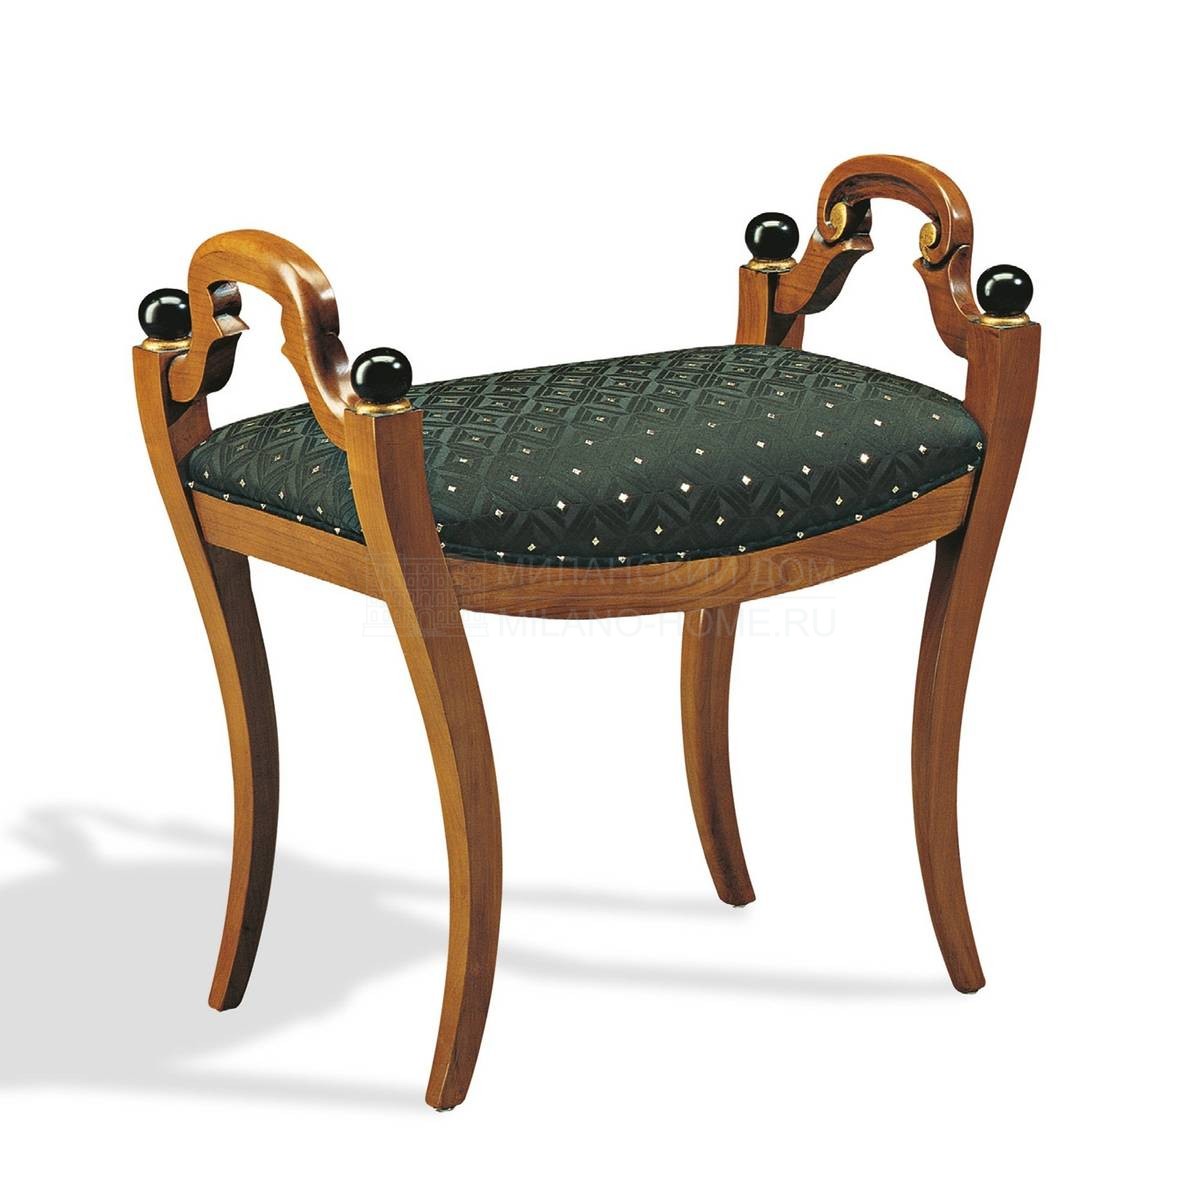 Скамейка The Upholstery / art.D13 из Италии фабрики FRANCESCO MOLON